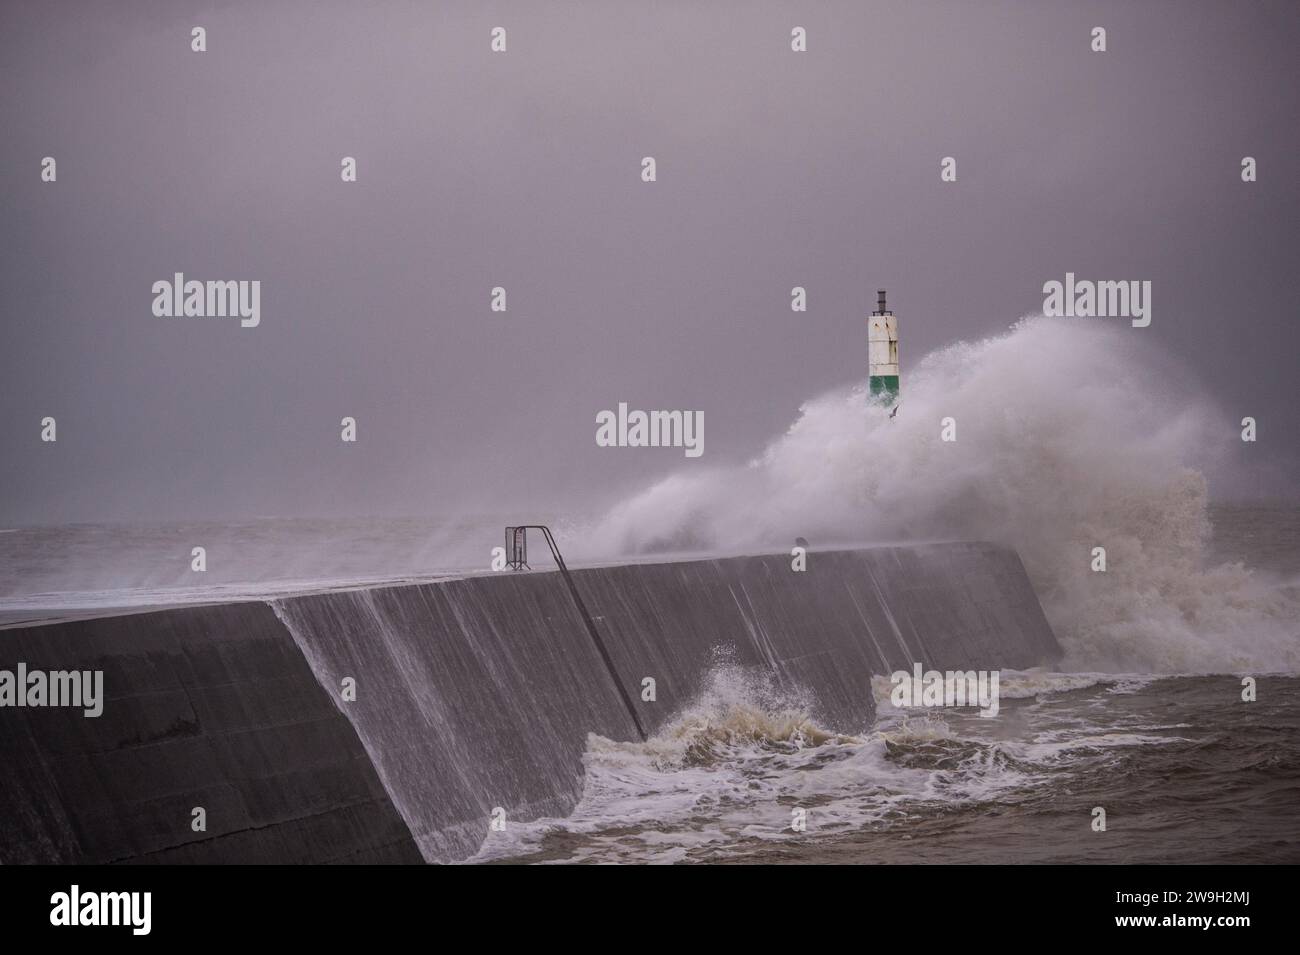 Sturm Gerrit überquert die walisische Küstenstadt Aberystwyth mit starken Winden von 50 km/h und Flut am frühen Donnerstagmorgen. Stockfoto